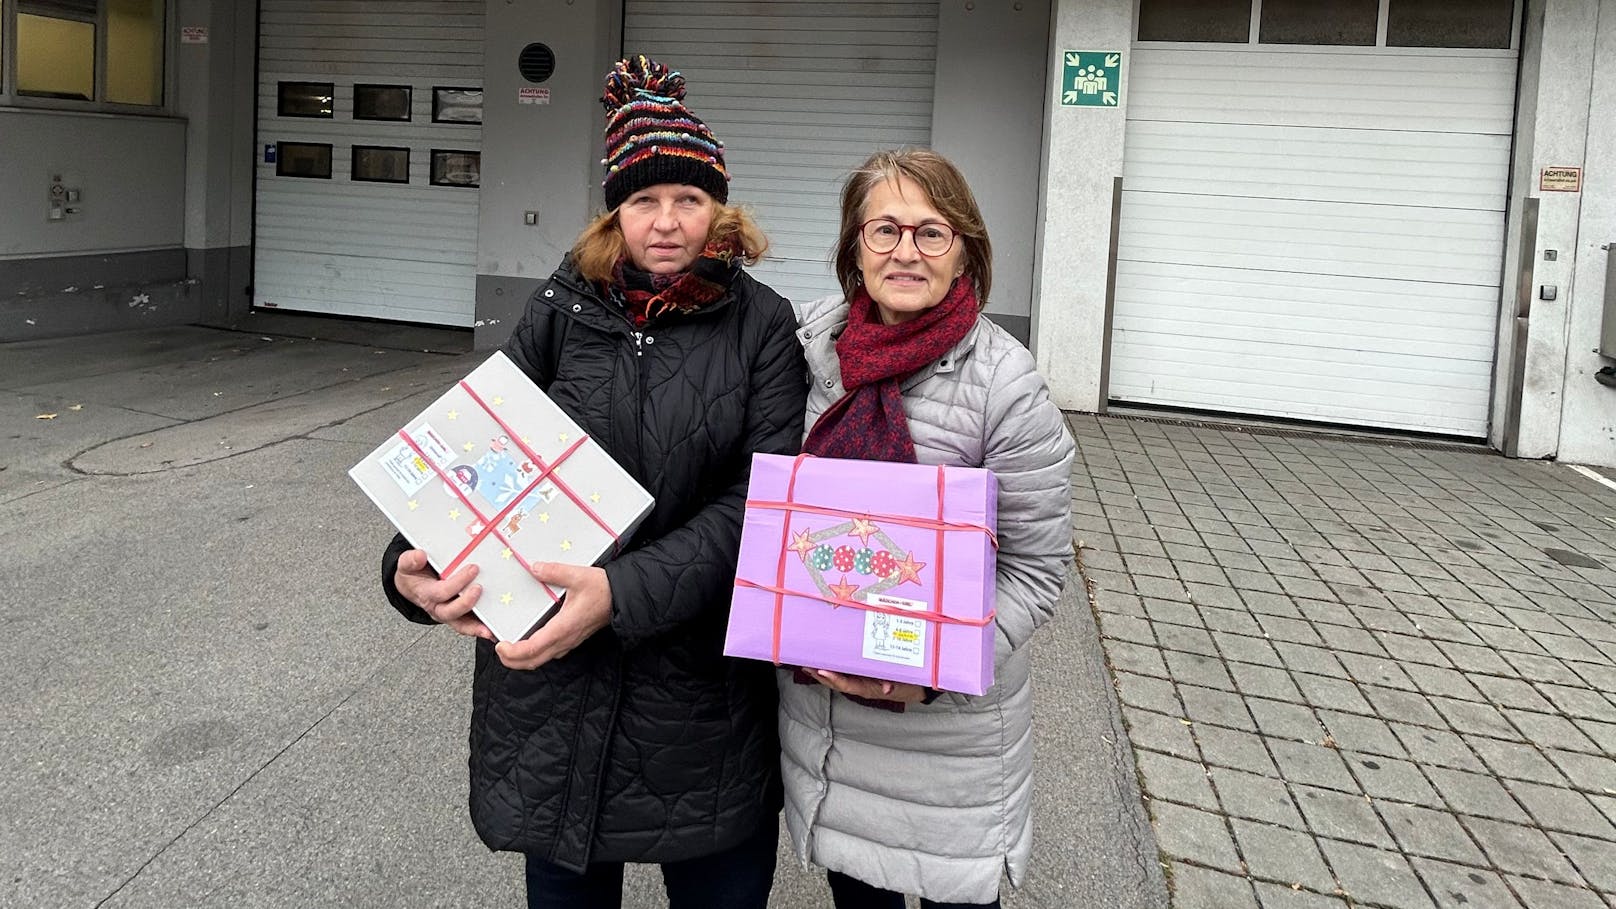 Wienerinnen gaben 1.000 € für Packerl an Bedürftige aus